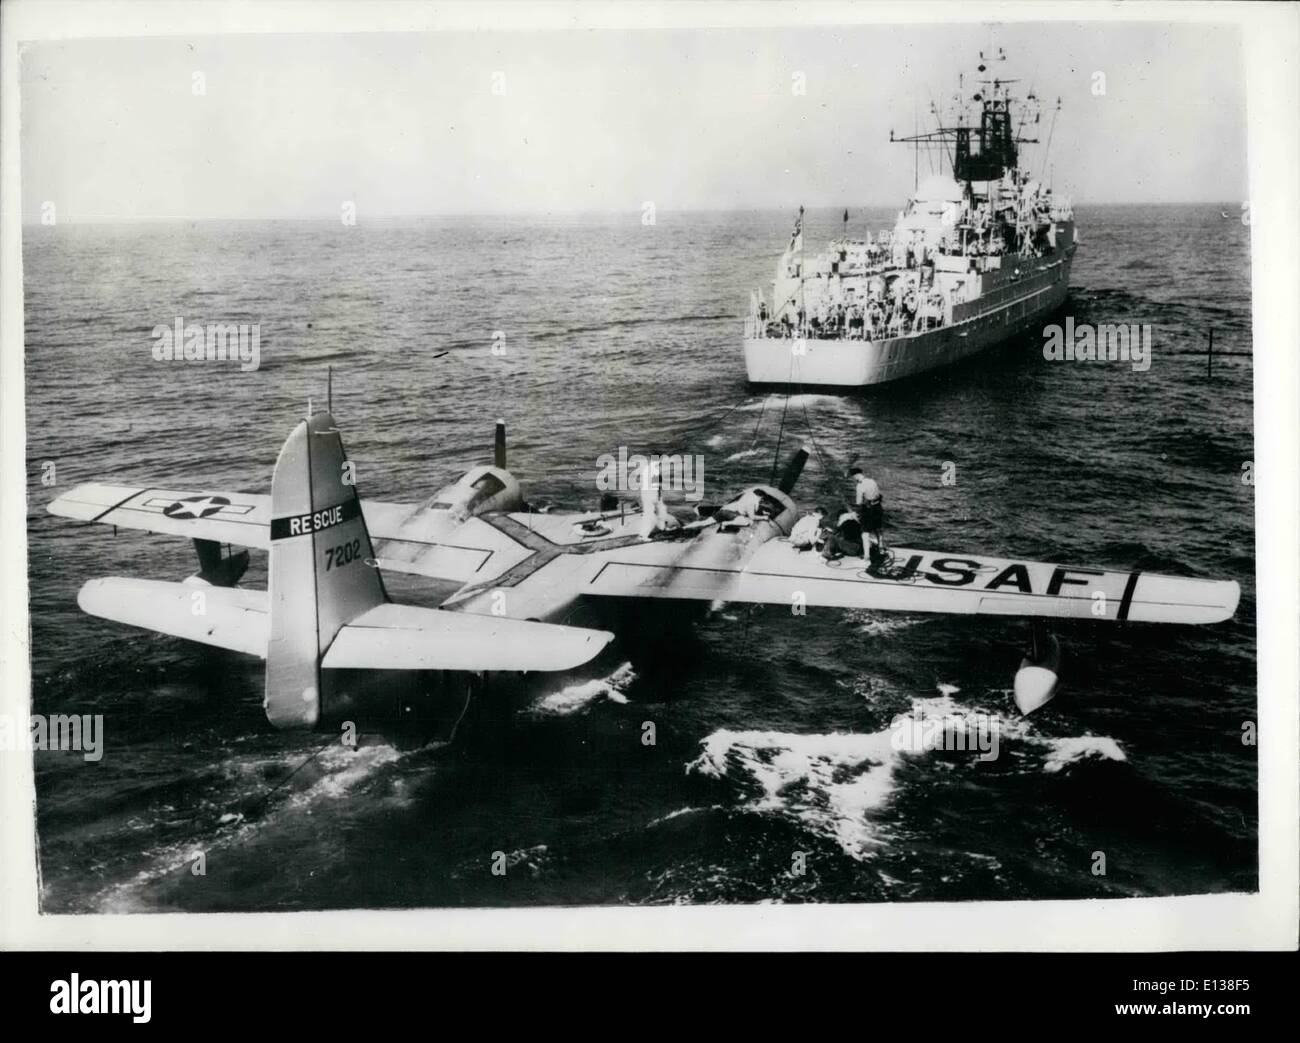 29 février 2012 - La photo officielle ( Amirauté) Crown copyright réservés.. Le H.M.S. , Éveil d'une frégate de la flotte méditerranéen, arrivèrent à Malte remorque un American Amphibian de sauvetage qui avait été abandonnée à la suite d'une opération de sauvetage en mer. En réponse à un appel radio pour une assistance médicale un homme dans un état critique le navire marchand Las Piedras (18 milles à l'Est de Malte) l'avion américain a été envoyé de wheelus field, Tripoli.. Dans l'atterrissage à côté du navire marchand, l'aéronef a subi des dommages et son équipage ont dû être prises les dommages avion a été laissée de côté. Banque D'Images